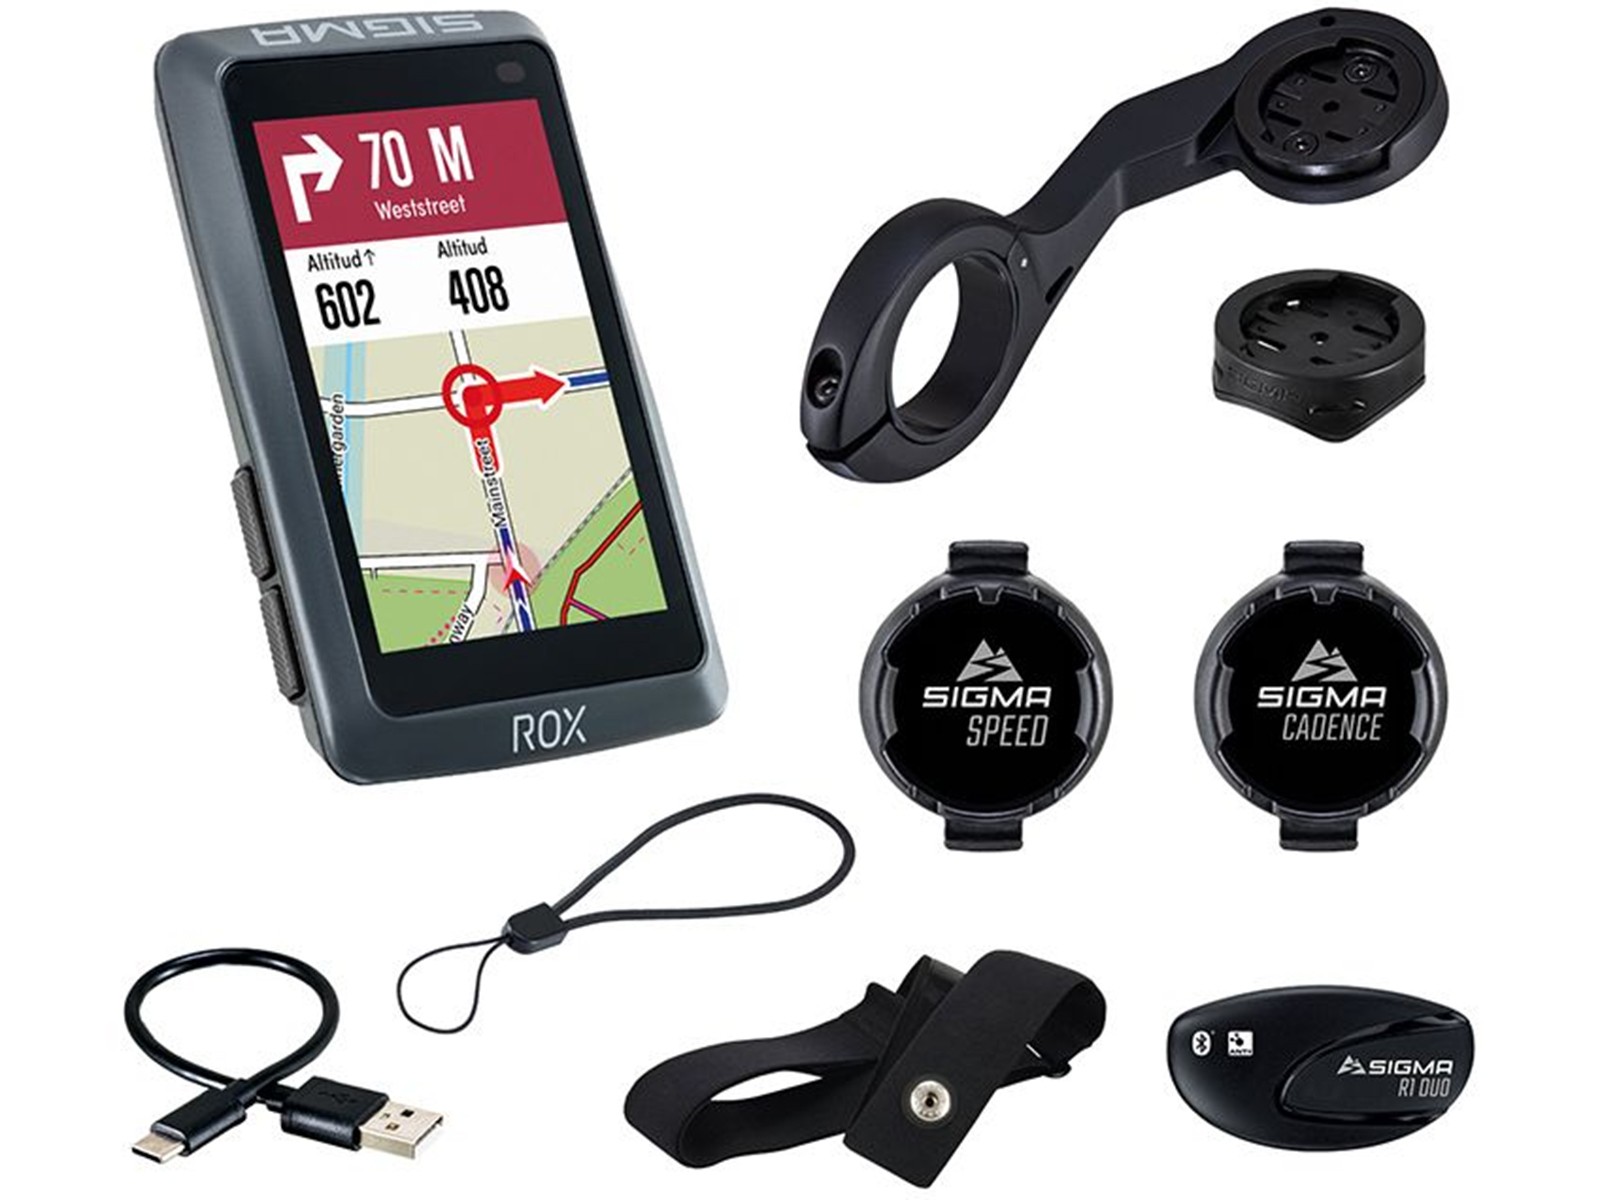 WideTech ofrece tecnología de localización GPS para bicicletas • Widetech